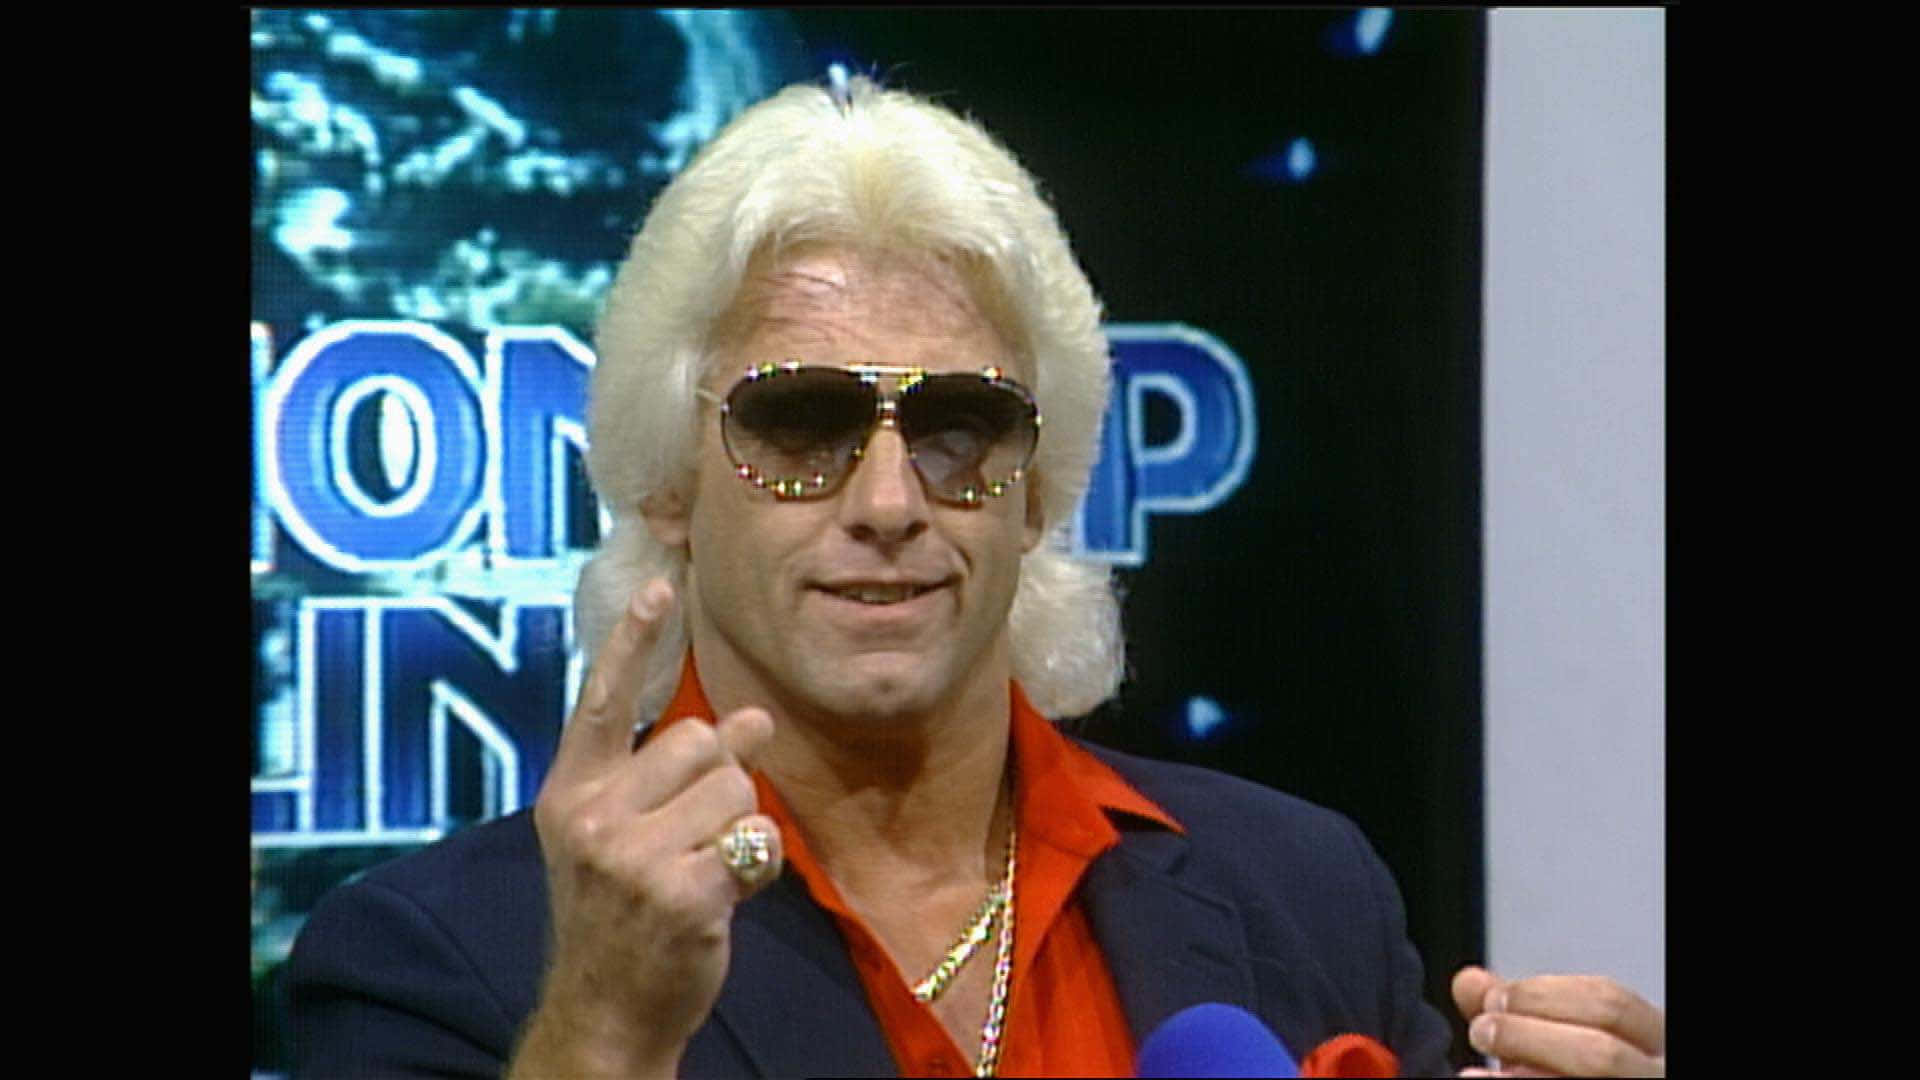 Entrevistaa Ric Flair Durante 1985. Fondo de pantalla